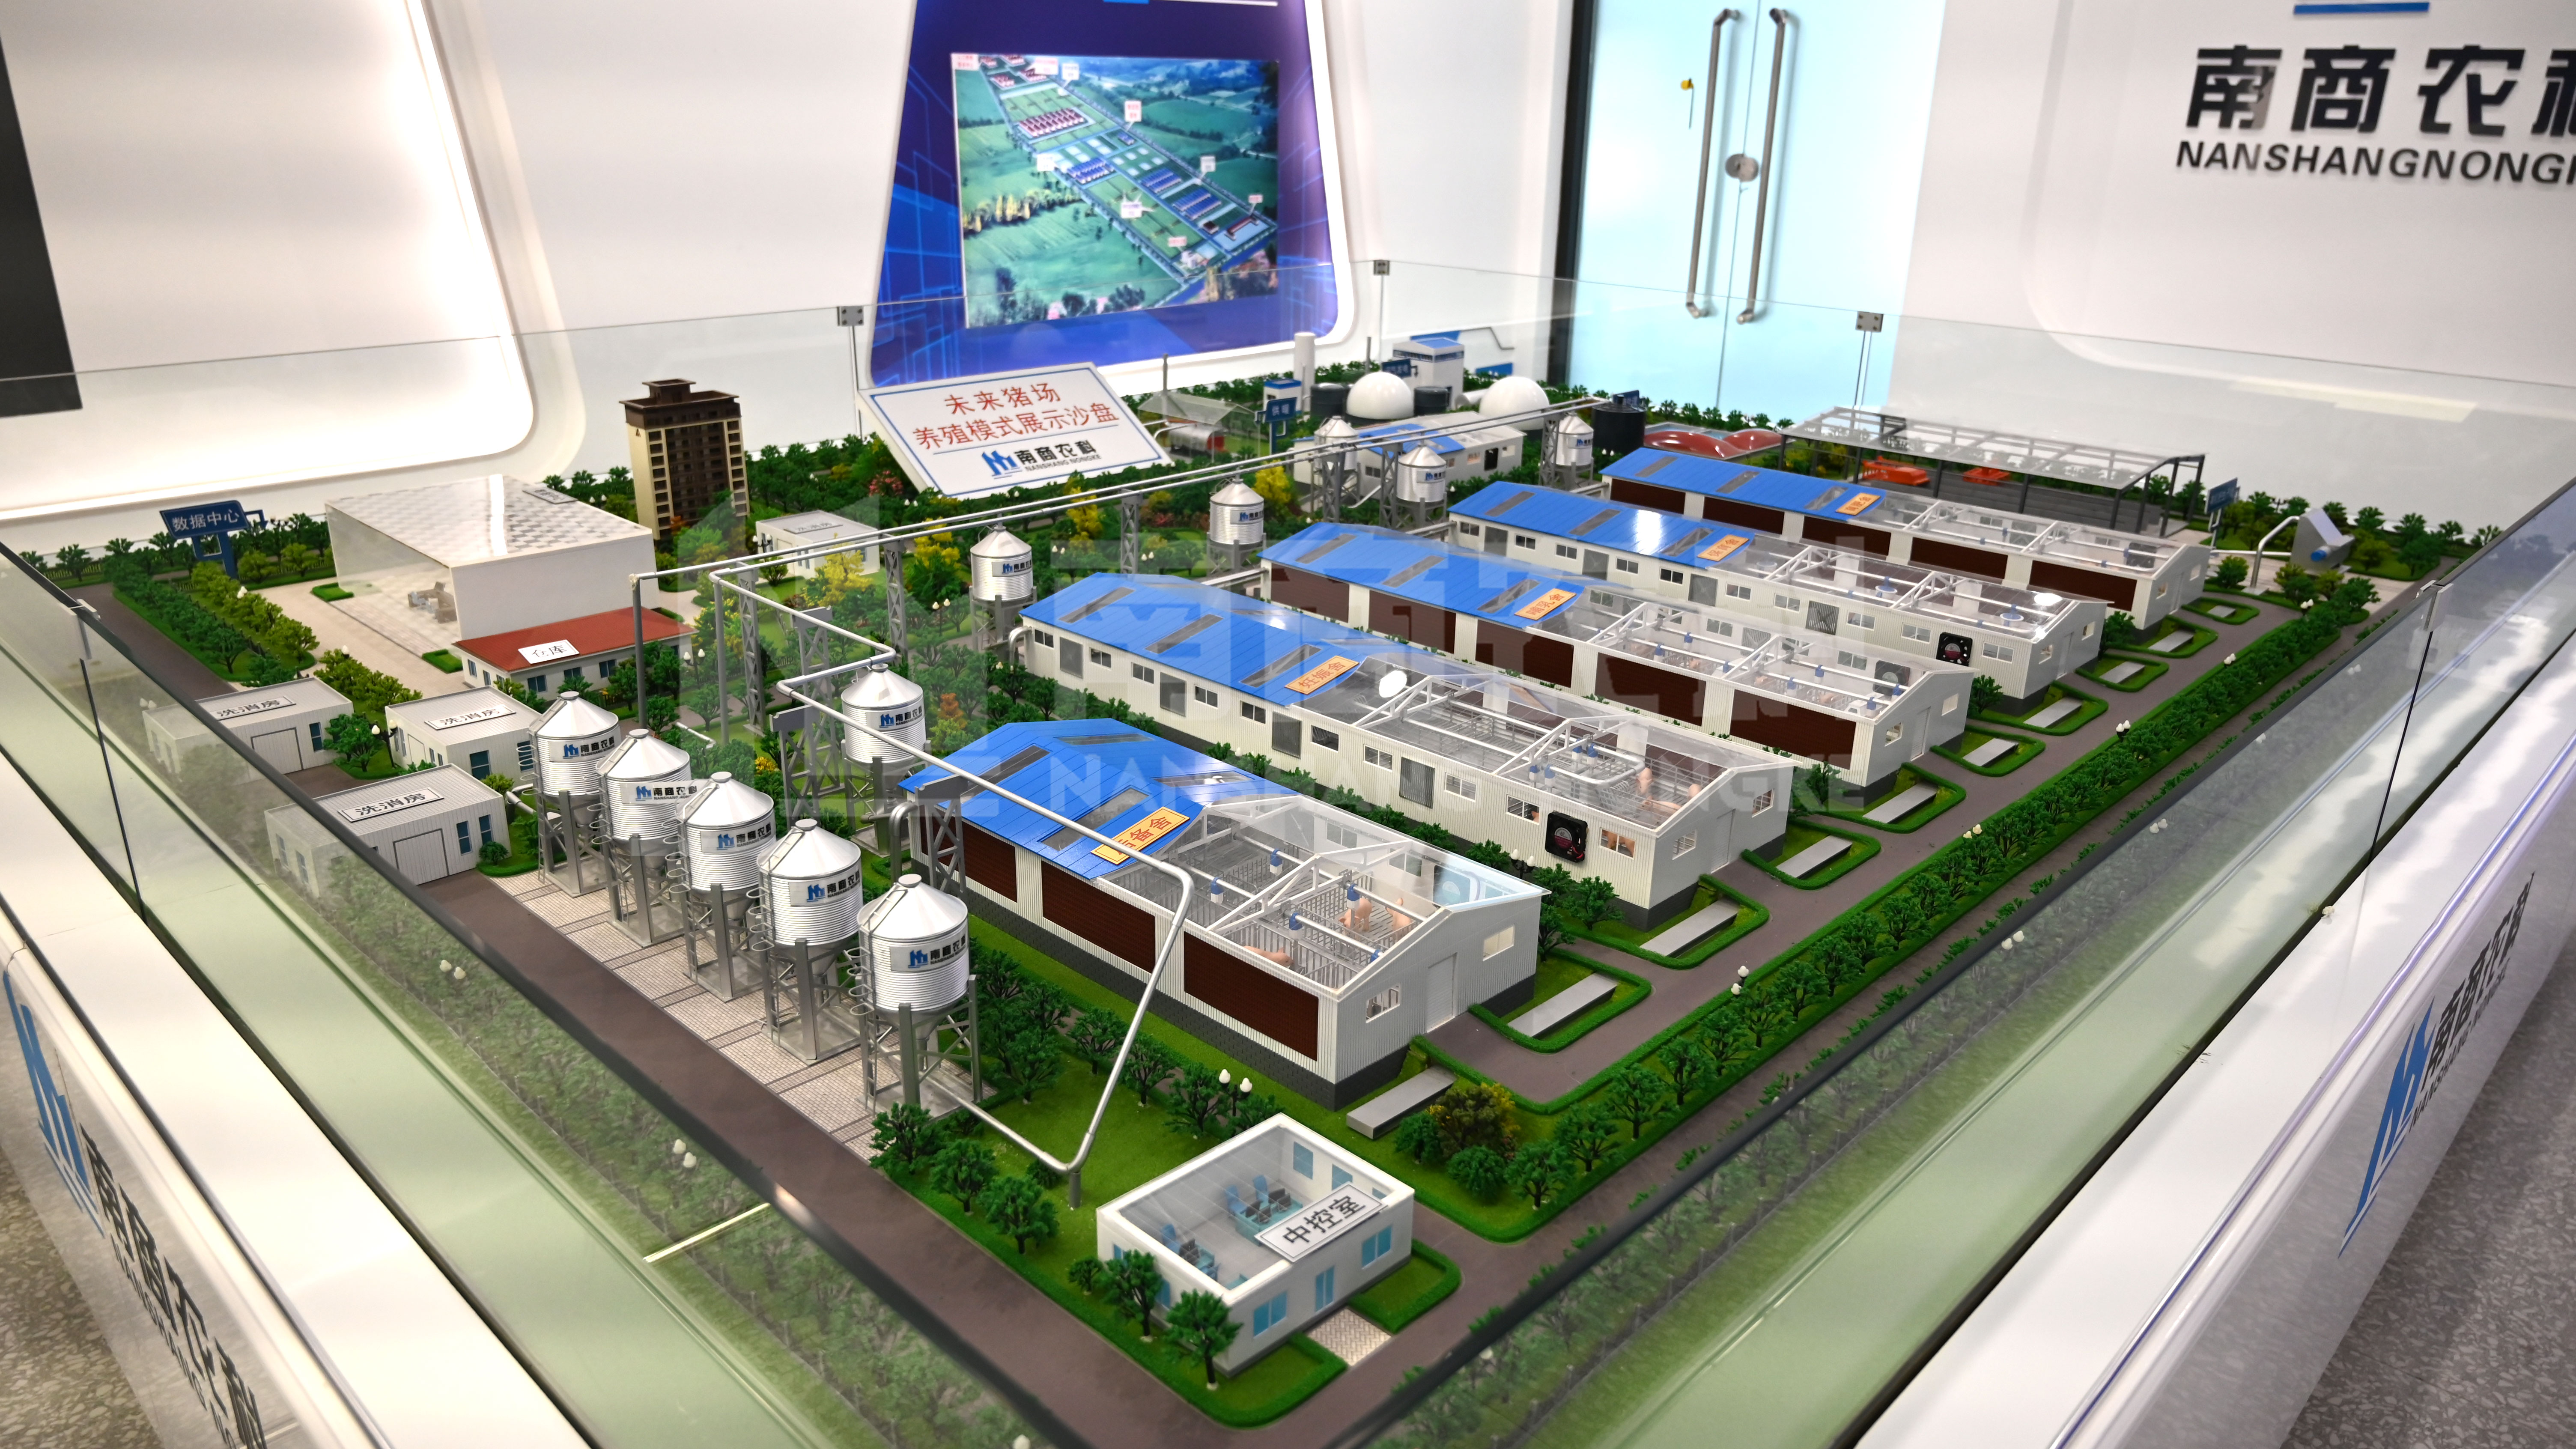 南商农科智慧猪场工业设计中心喜获第五批省级工业设计中心拟认定！